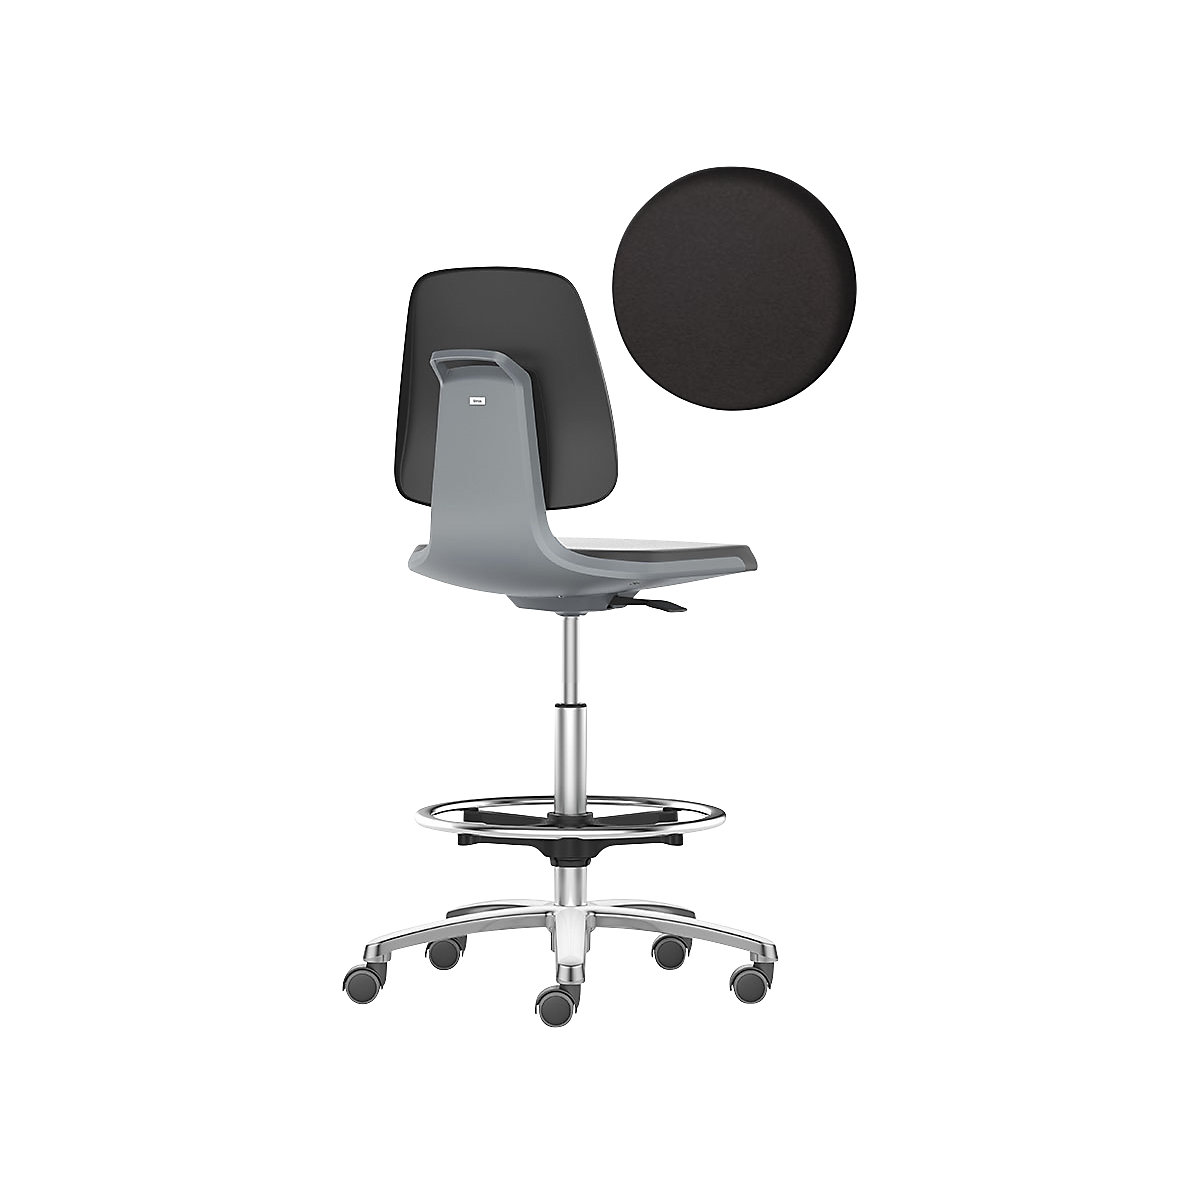 Arbeitsdrehstuhl LABSIT bimos, Hochstuhl mit Sitz-Stopp-Rollen und Fußring, Sitz mit Kunstlederbezug, anthrazit-15